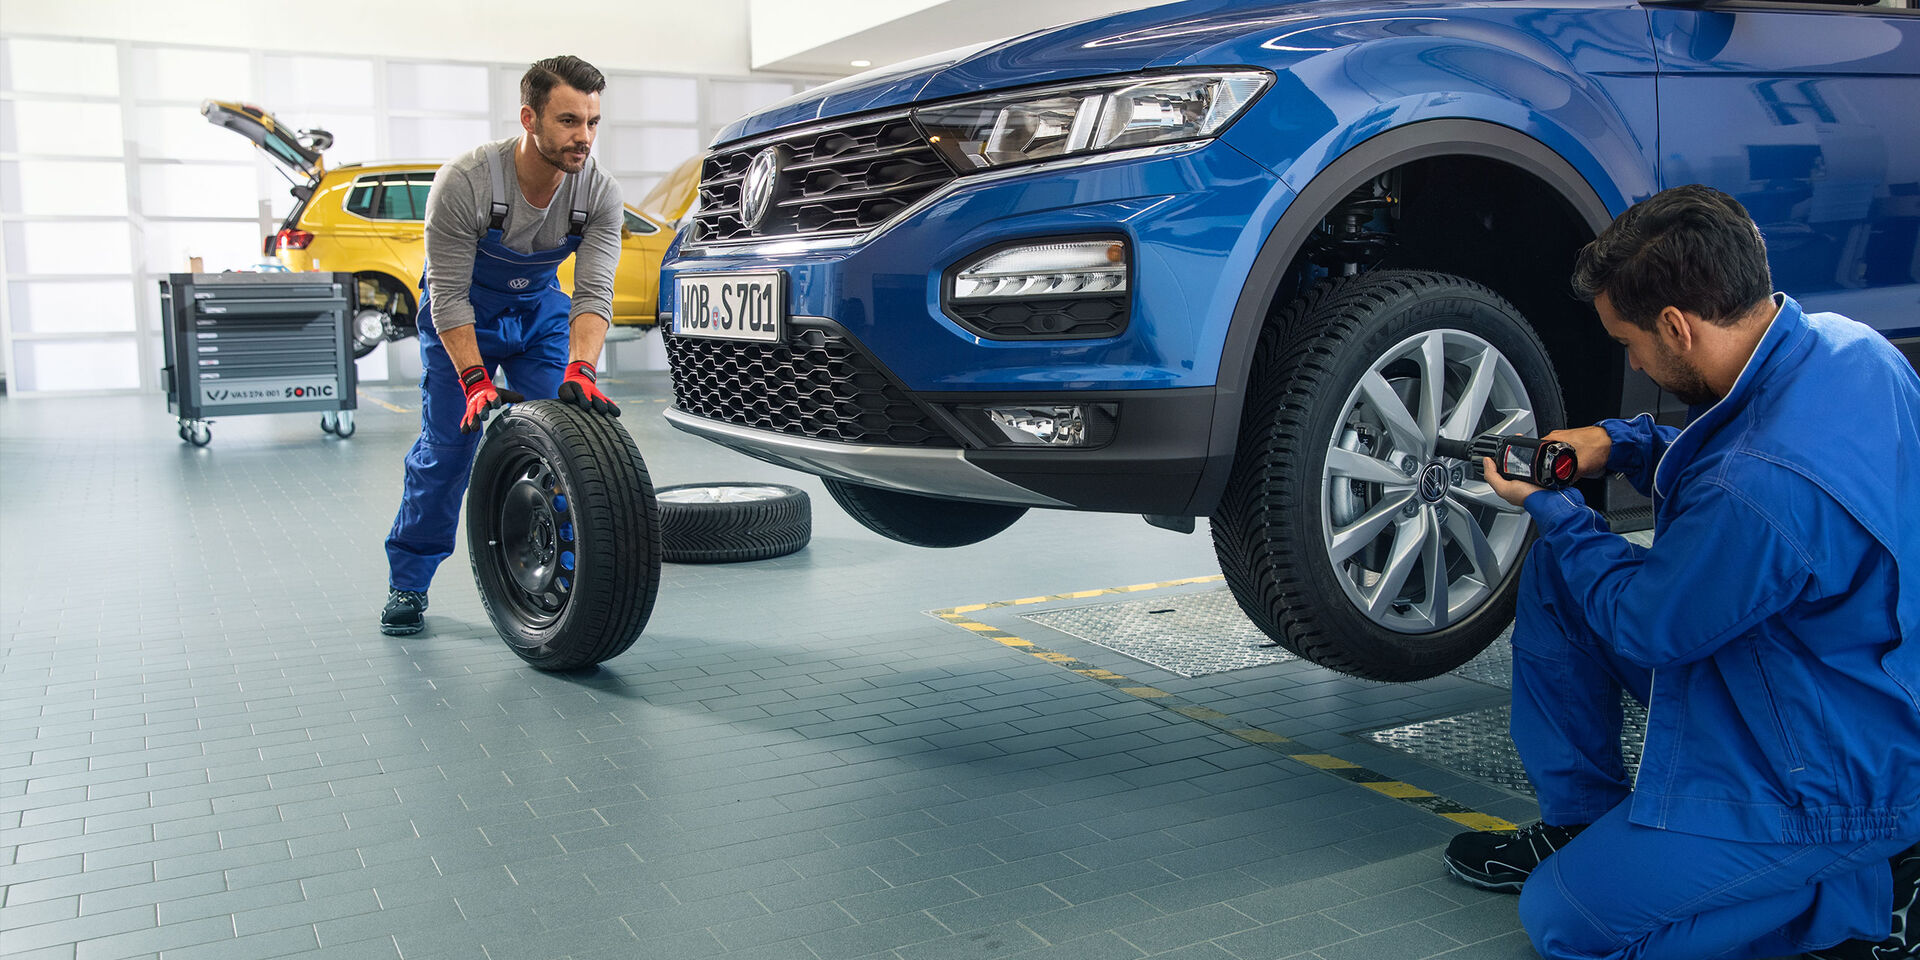 Dois empregados do serviço VW trabalham juntos na troca de pneus de um VW Tiguan azul numa oficina